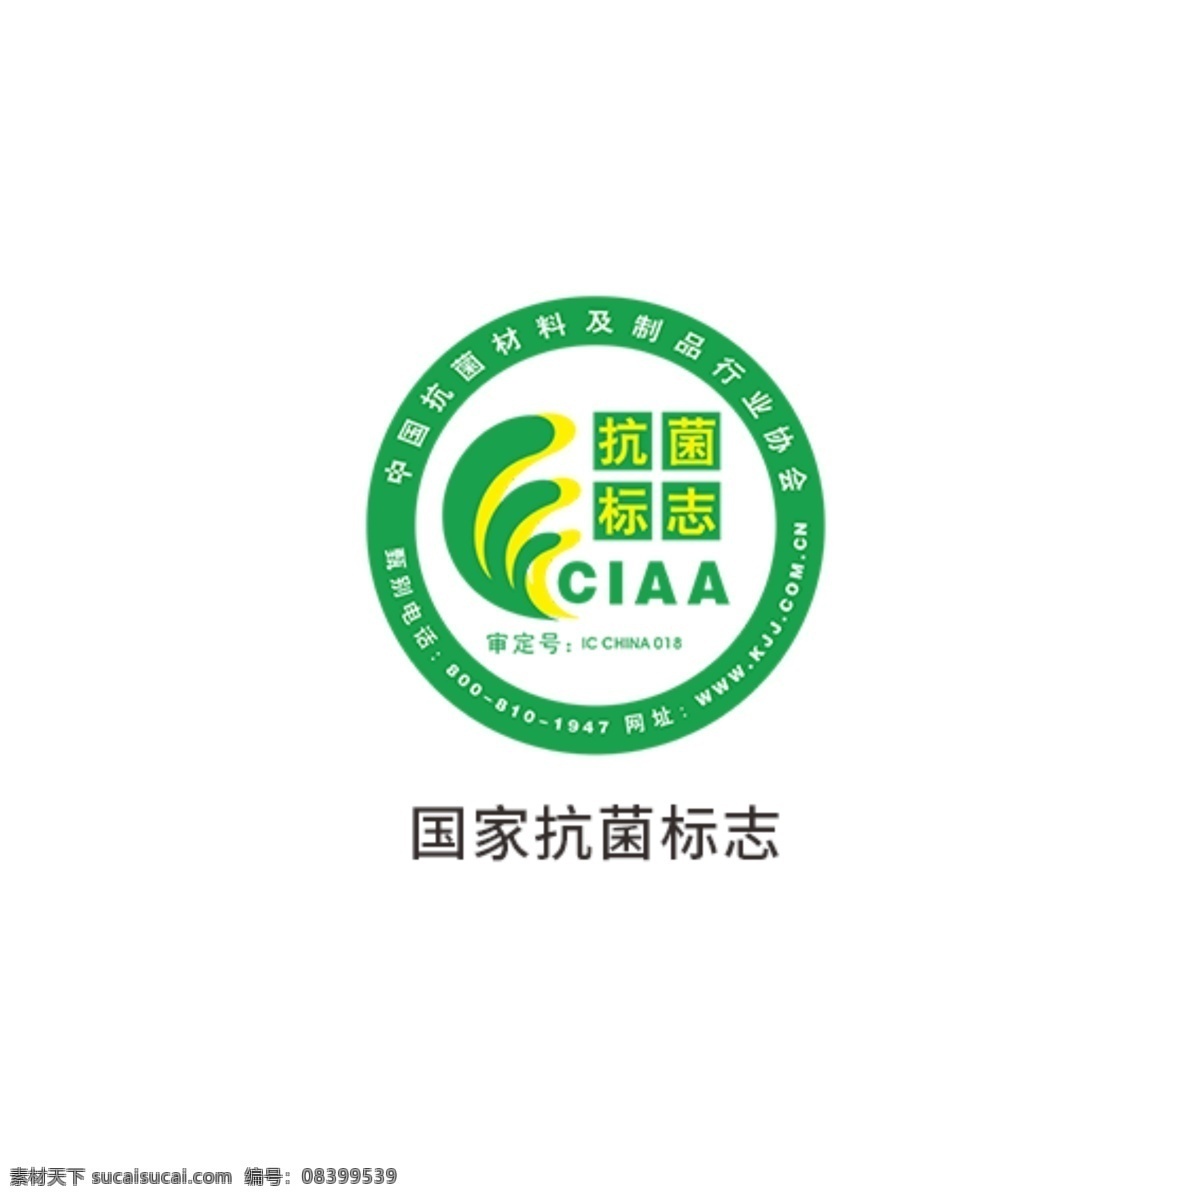 国家抗菌标志 环保标识 中国卫生 监督标志 有机产品标志 中国节水标志 有机食品标志